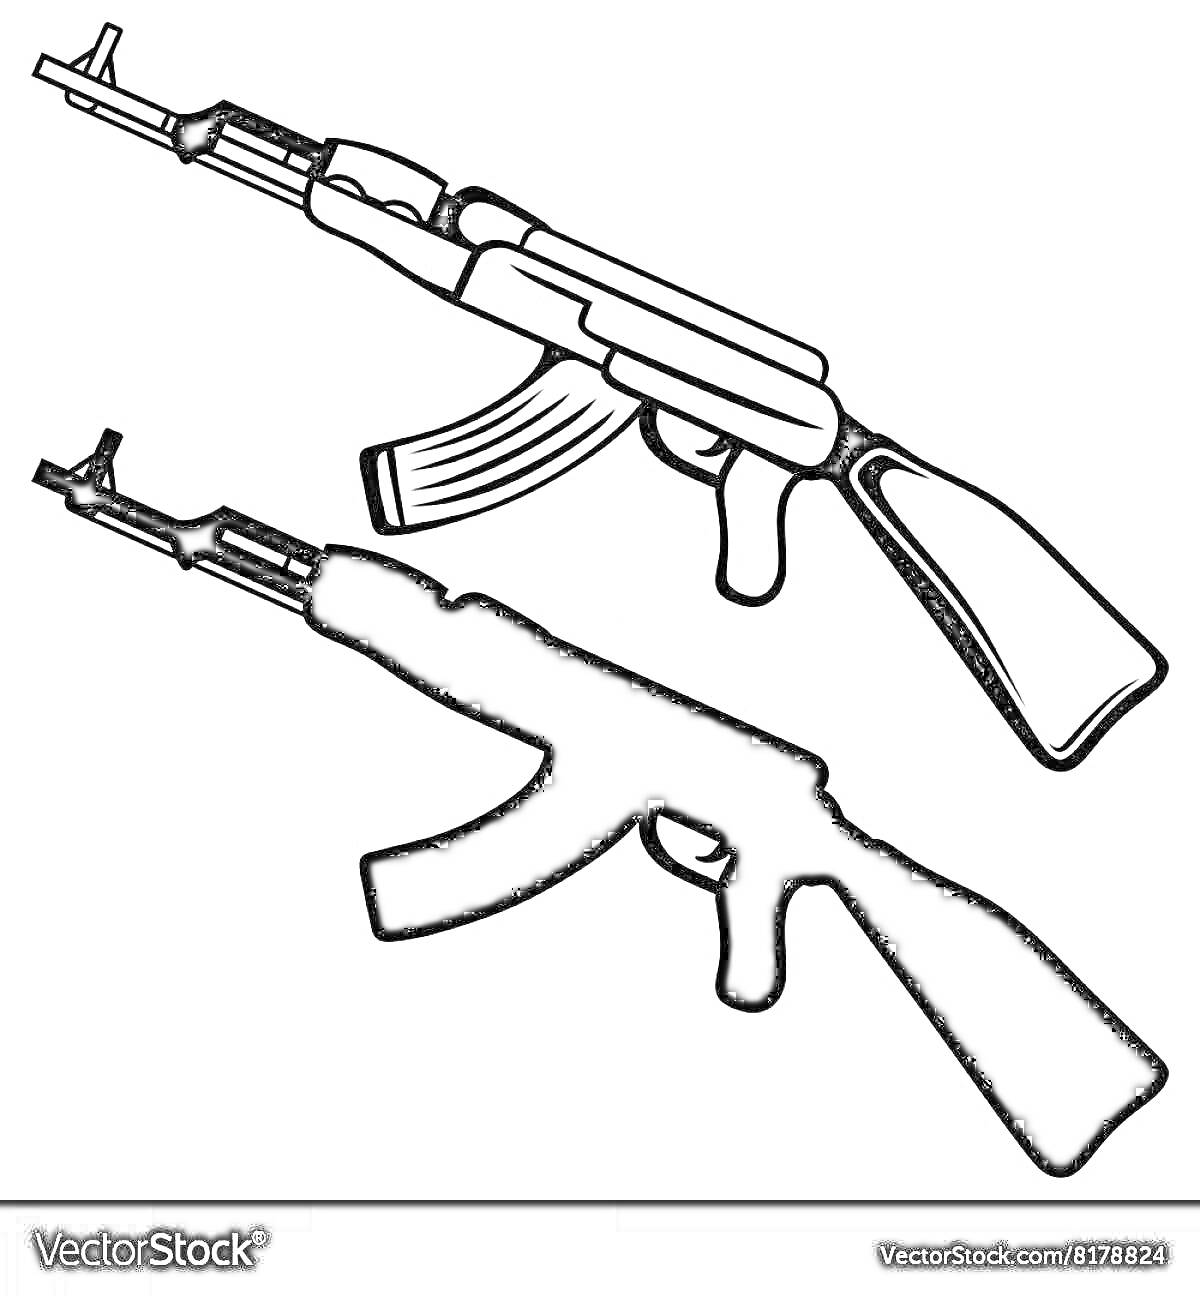 Два изображения АК-47, одно с контуром, другое полностью залитое черным